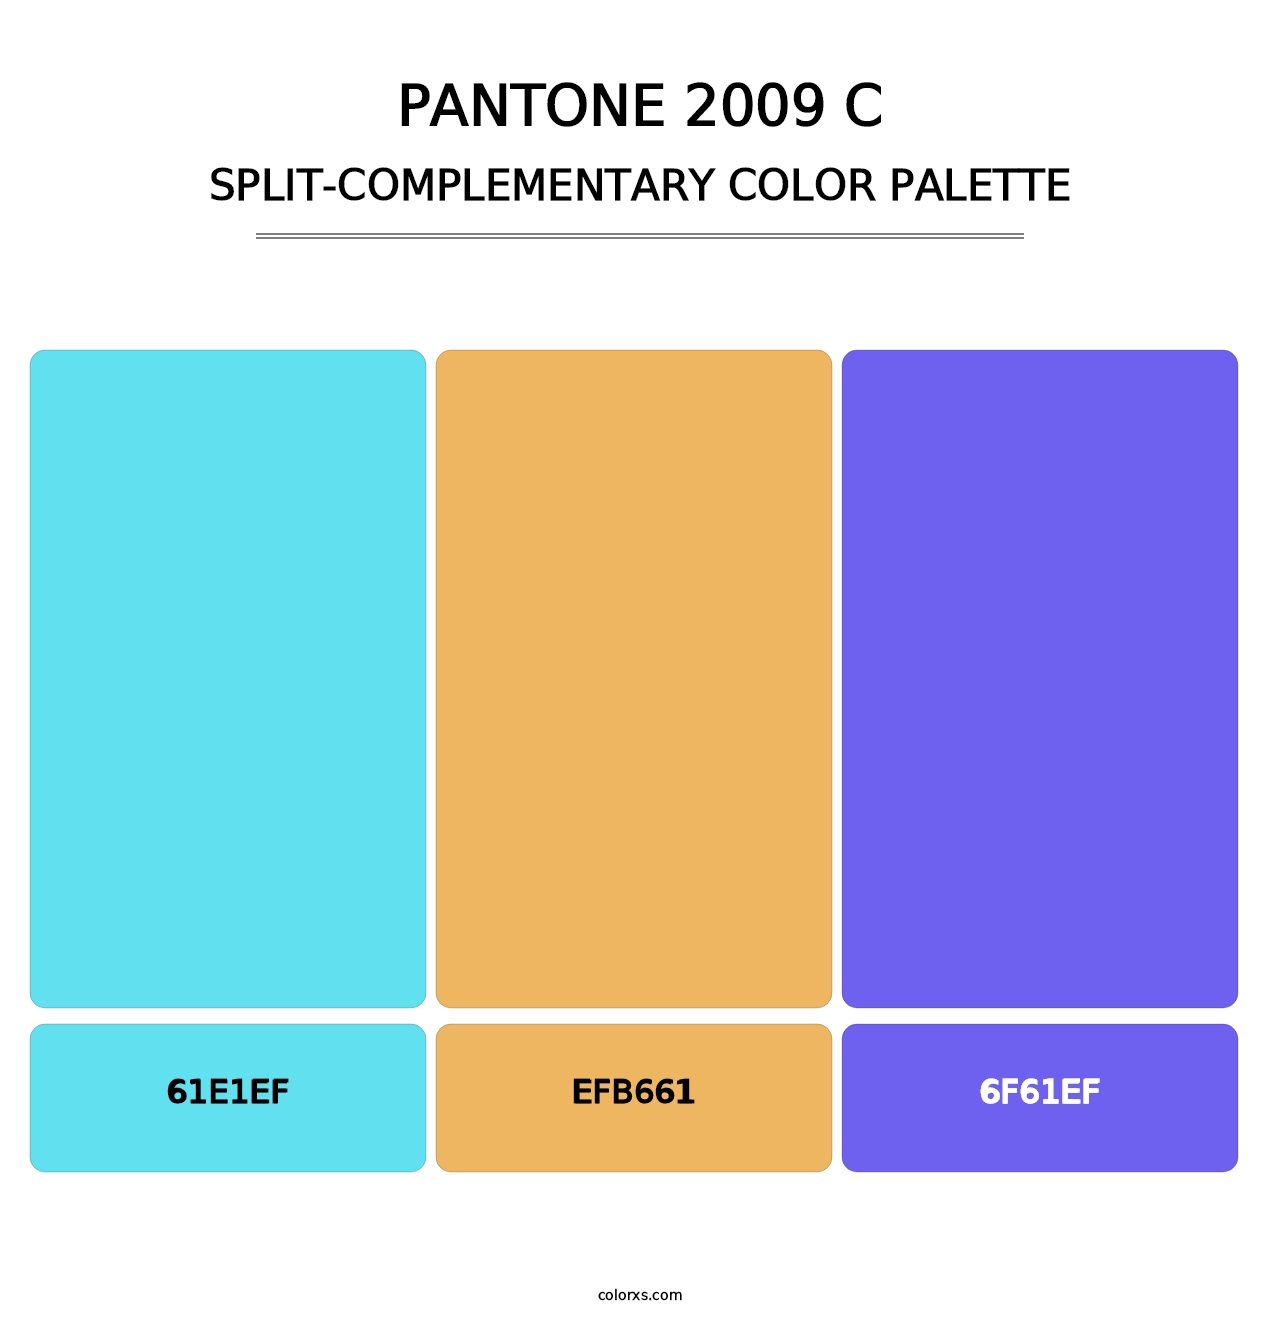 PANTONE 2009 C - Split-Complementary Color Palette